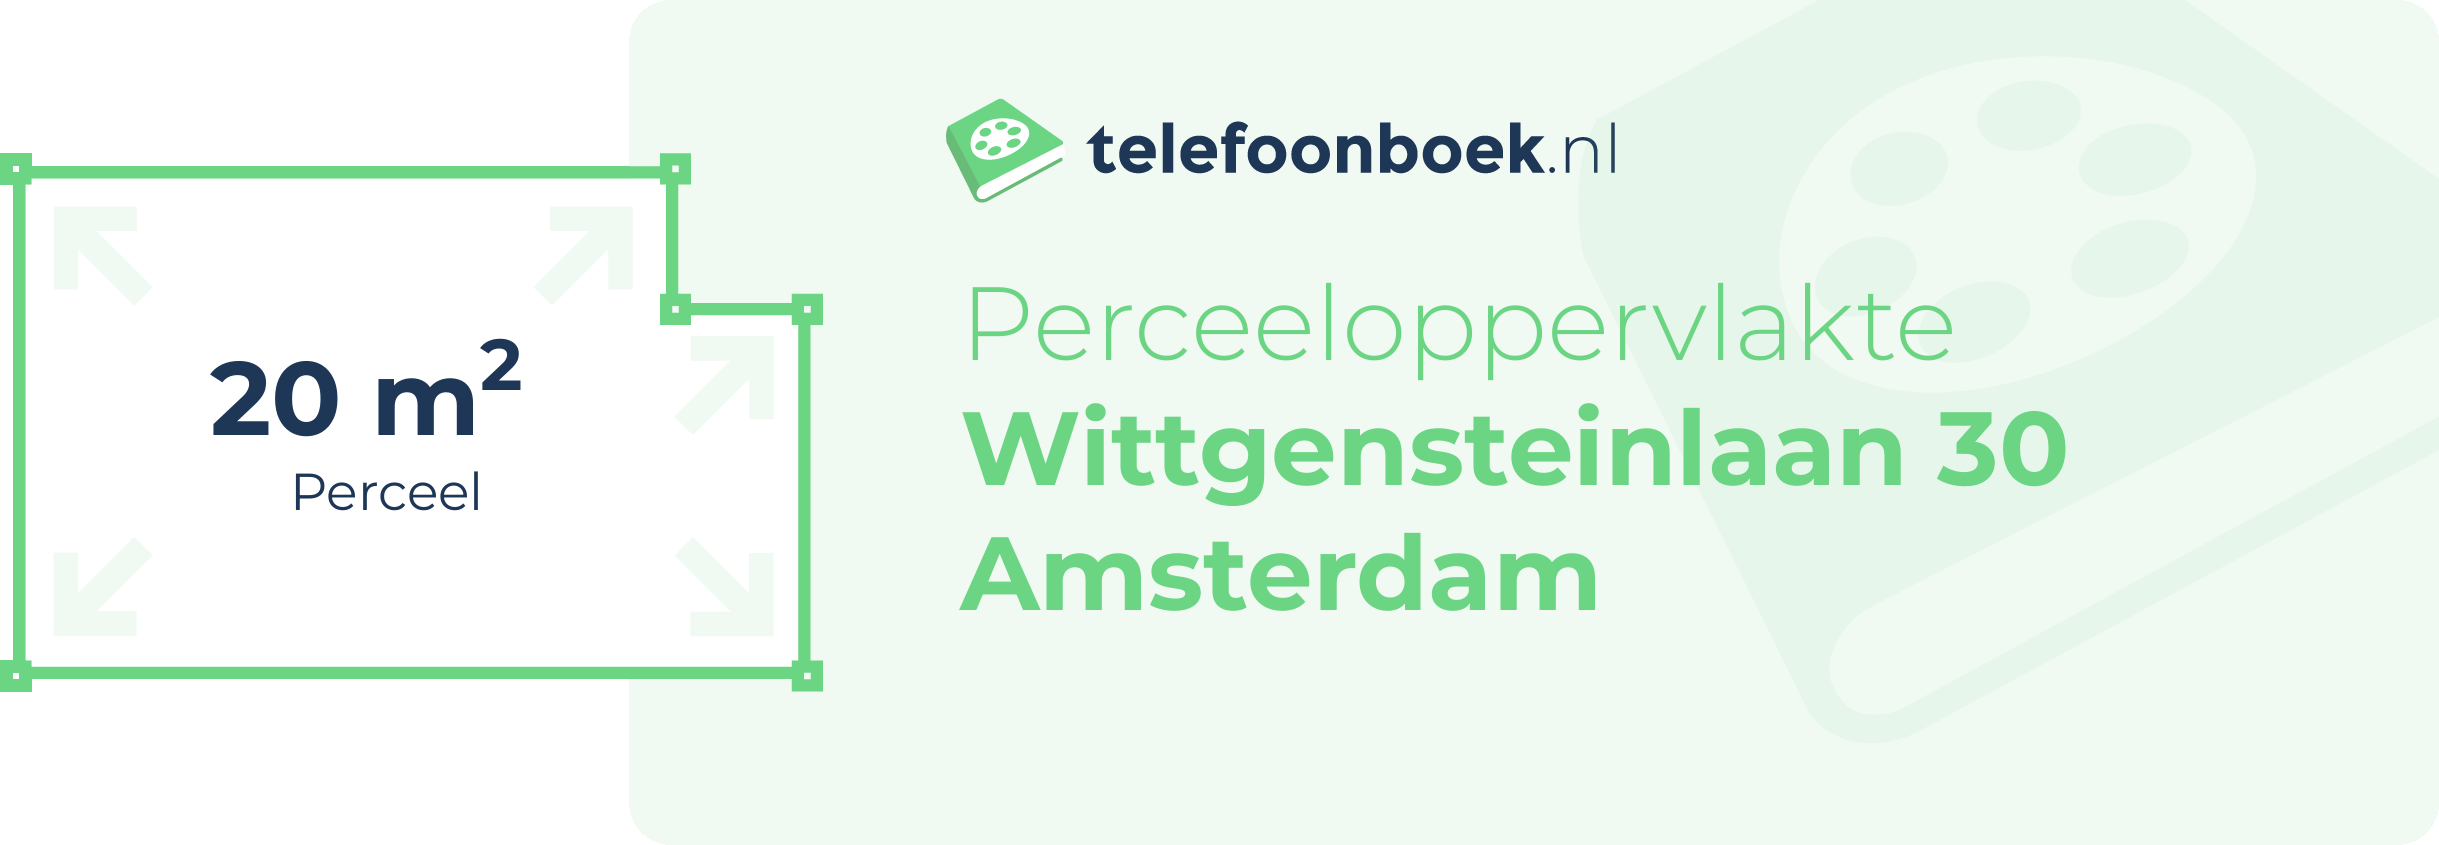 Perceeloppervlakte Wittgensteinlaan 30 Amsterdam